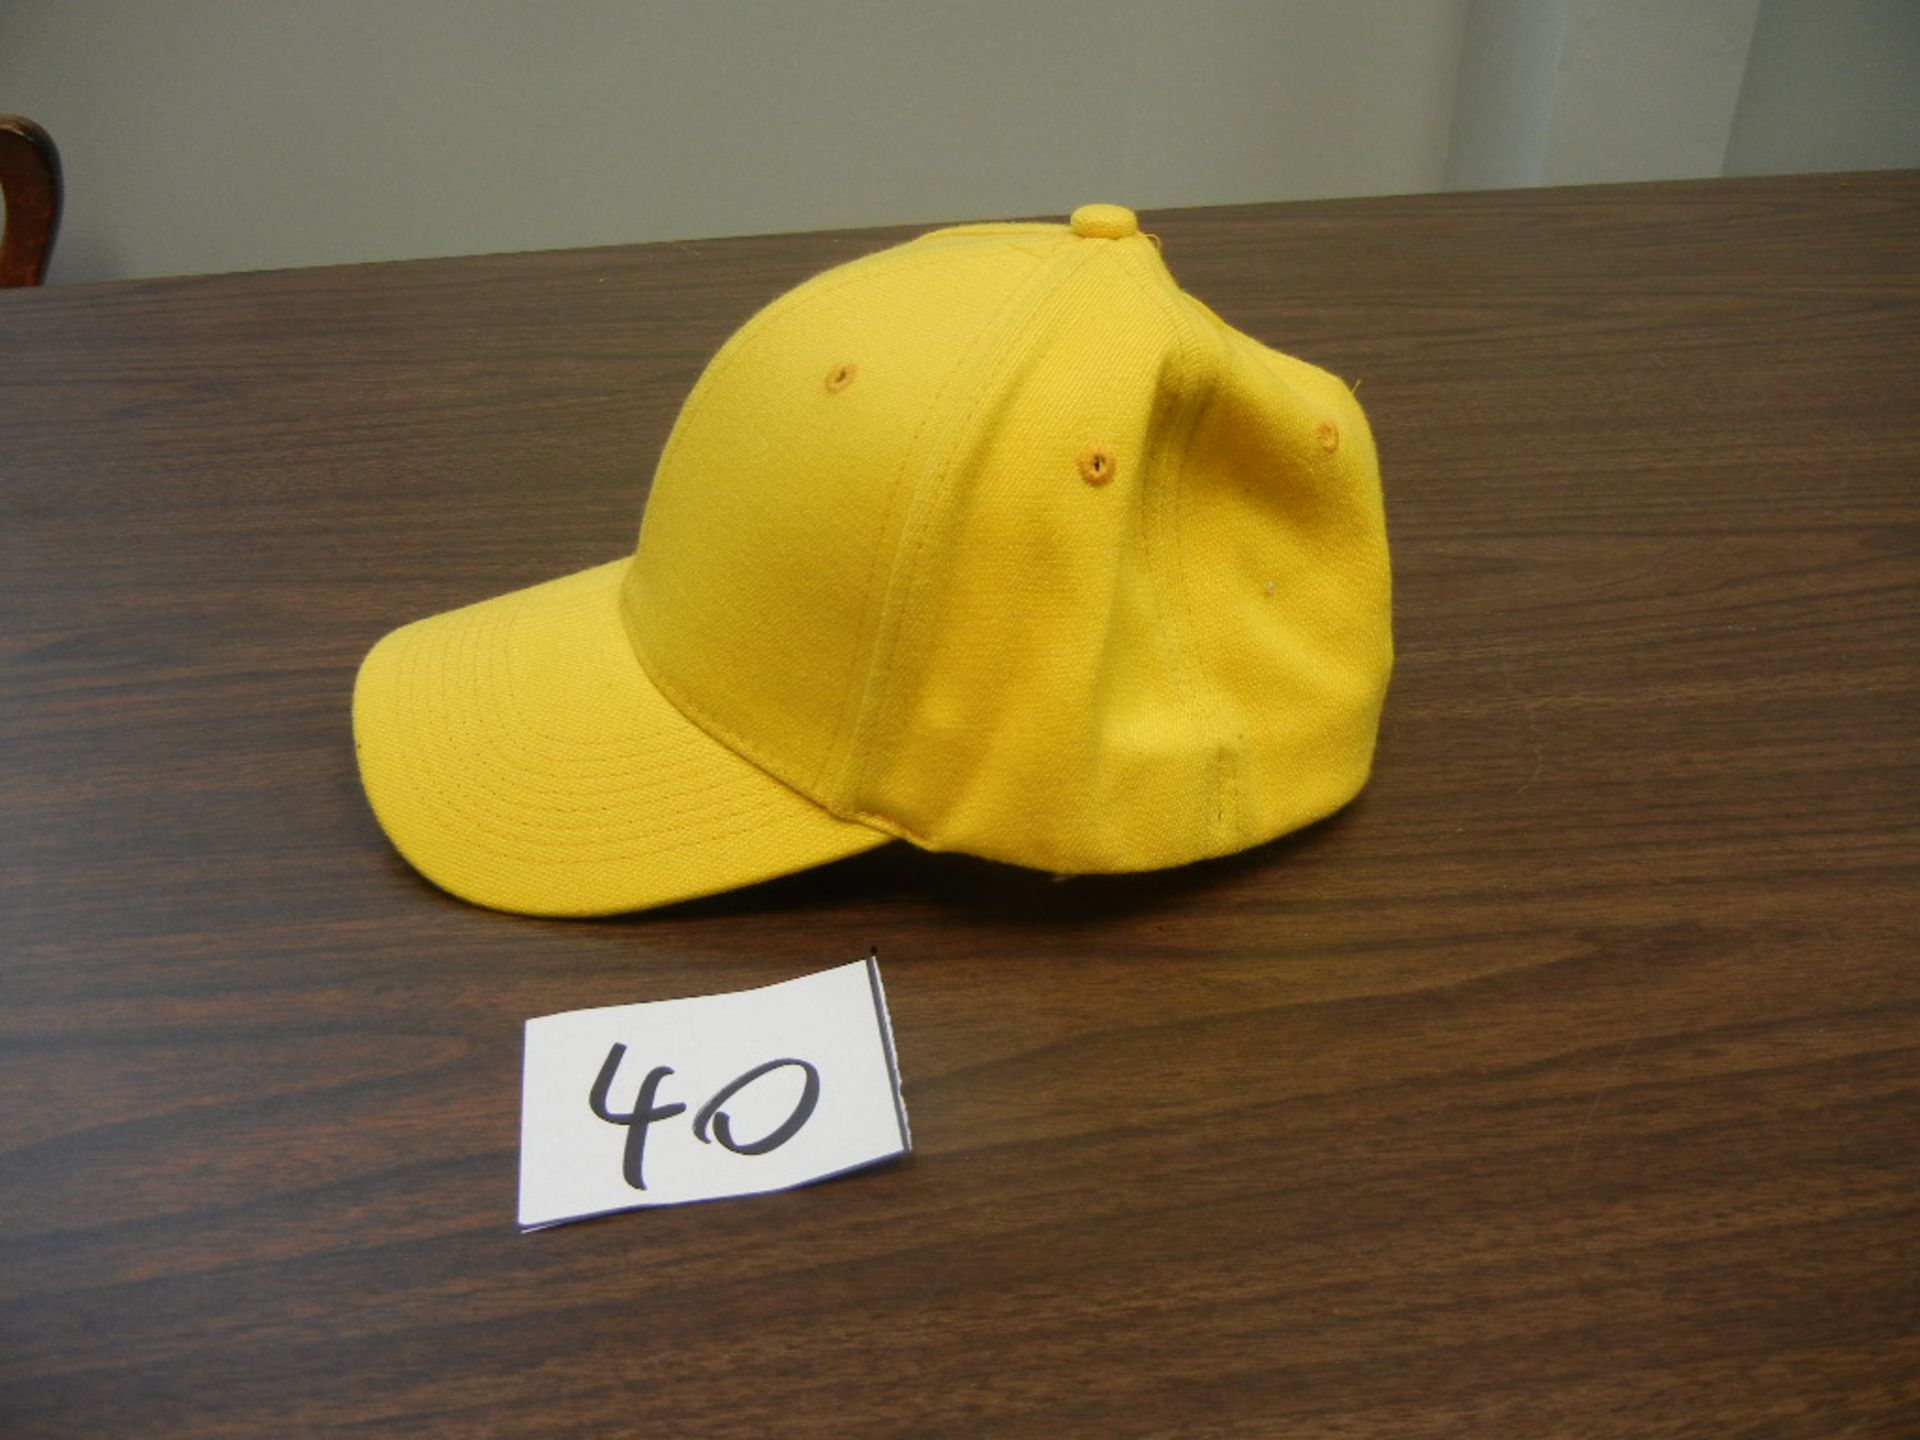 Wool Blend Stretch Fit cap, 6 Panel, with US Patent 24 hats/case, 3cs s/m, 3cs m/l, 3cs l/xl Gold